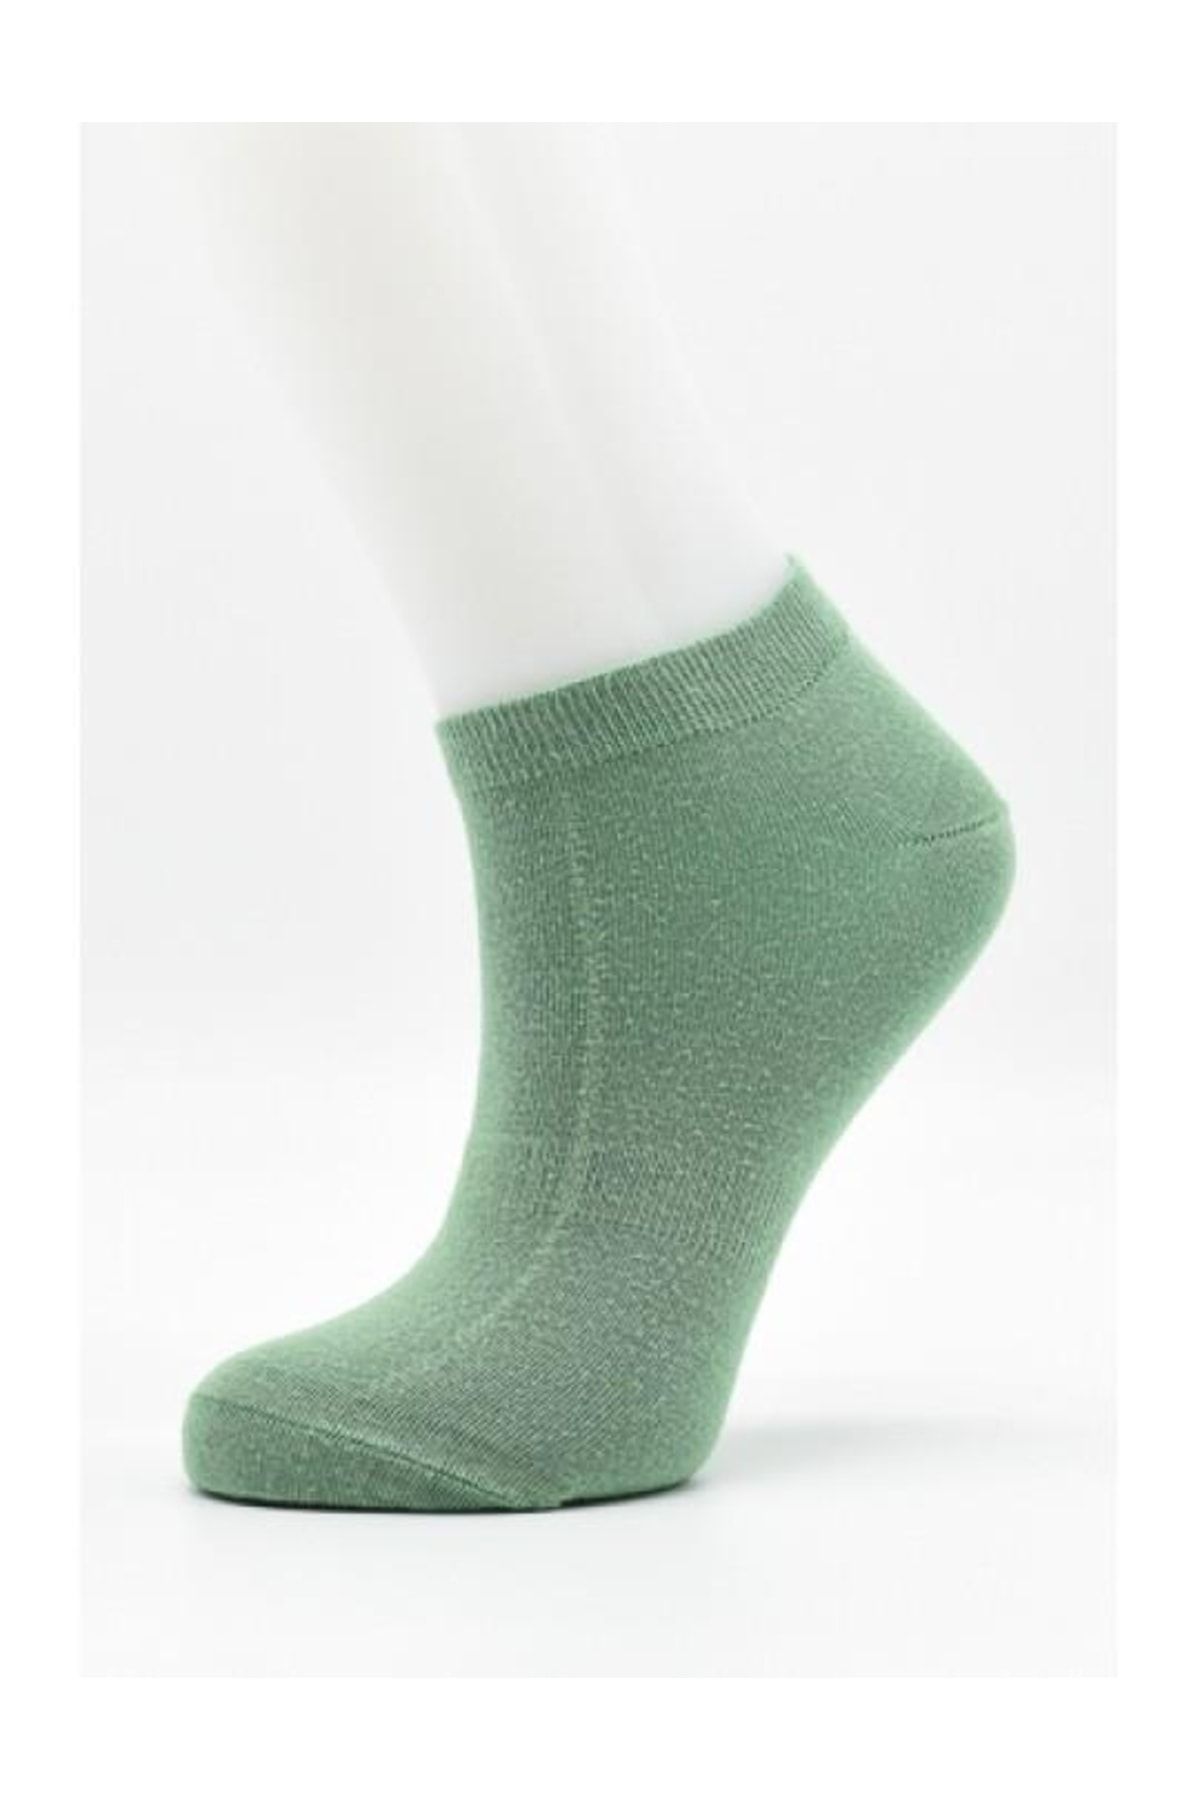 URART Kadın Modal Patik Çorabı | Kadın Modal Patik-1